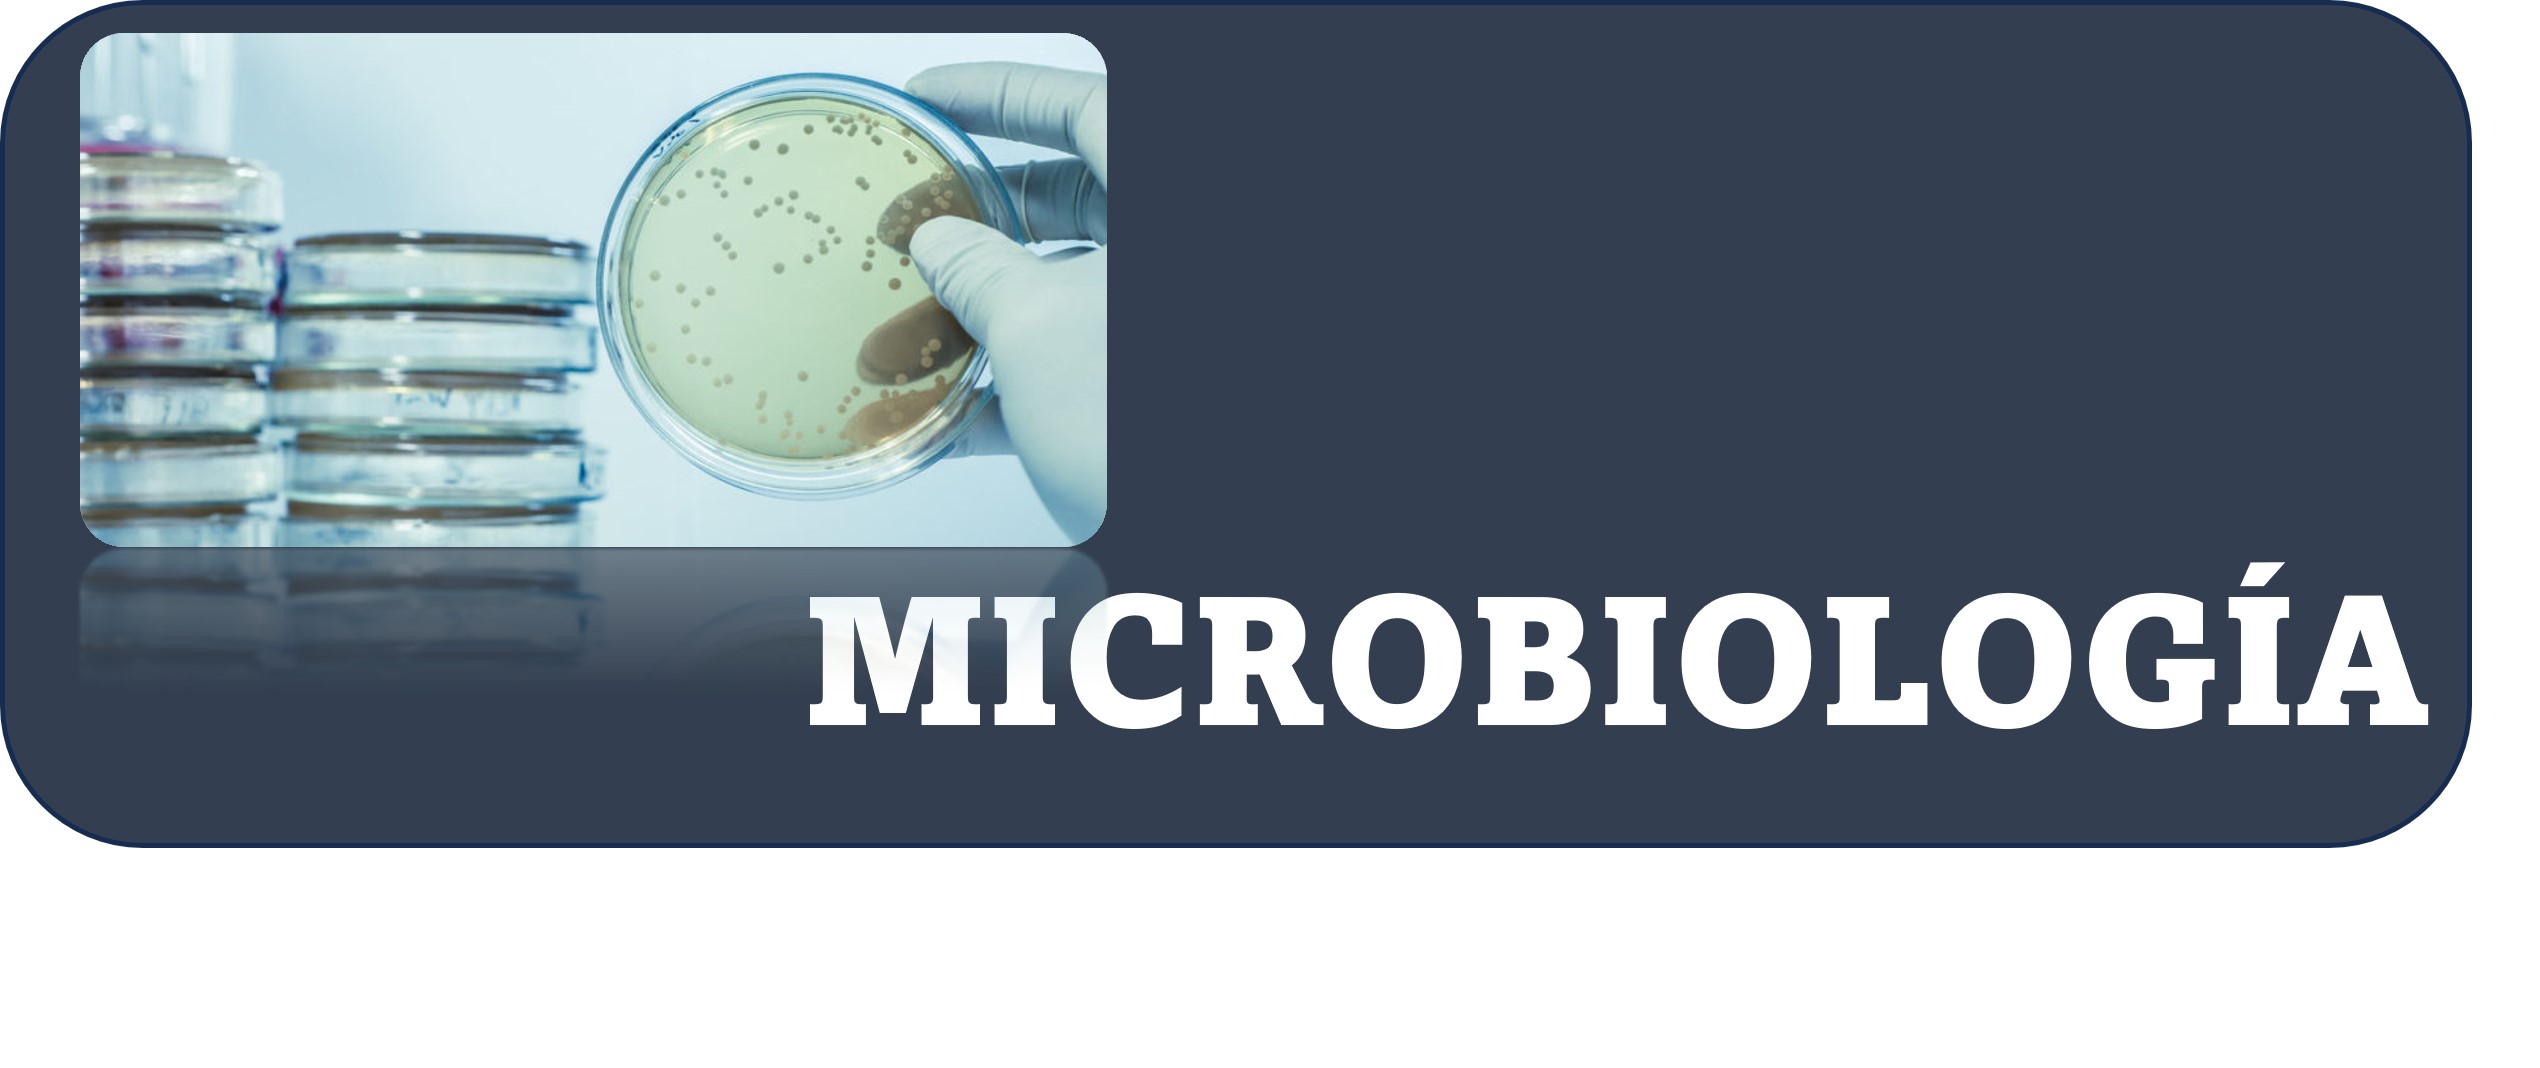 Microbiología